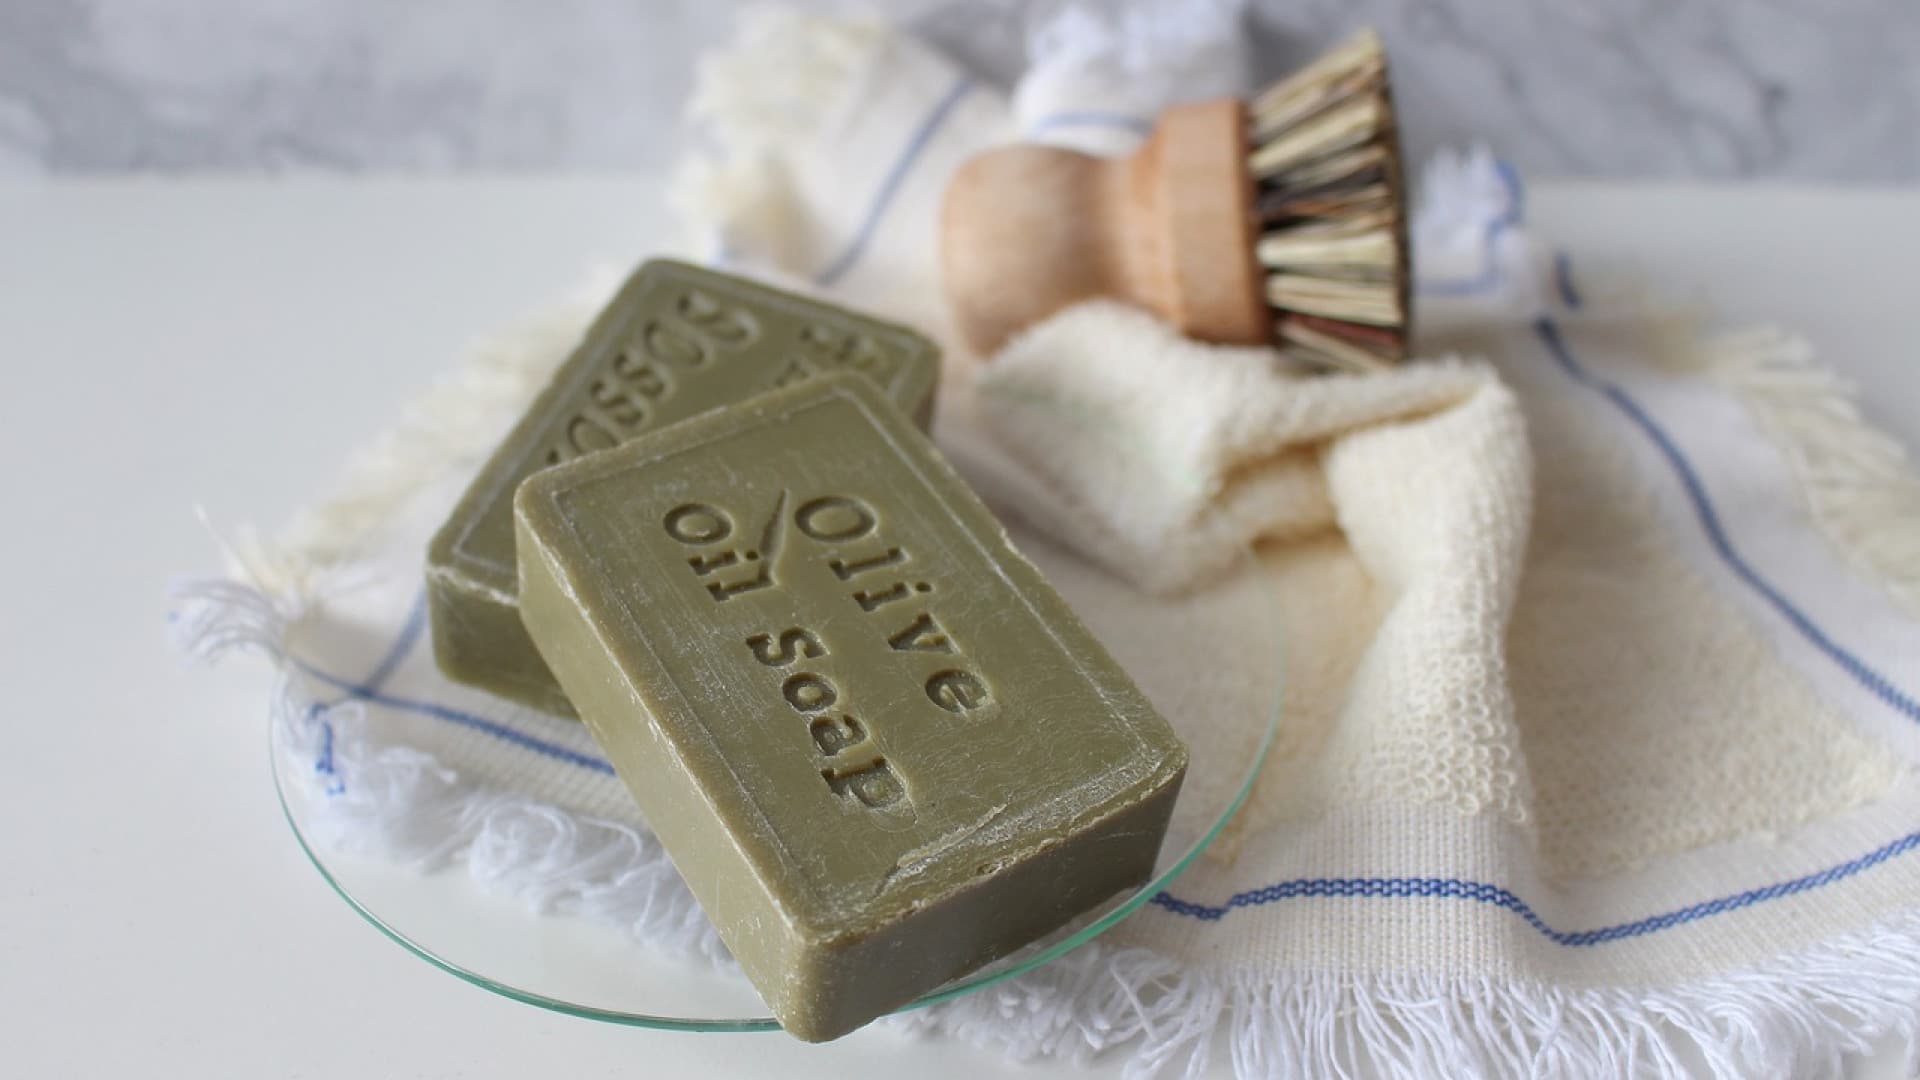 Barres de savon à l'huile d'olive avec une brosse et un gant de toilette sur une surface en marbre.